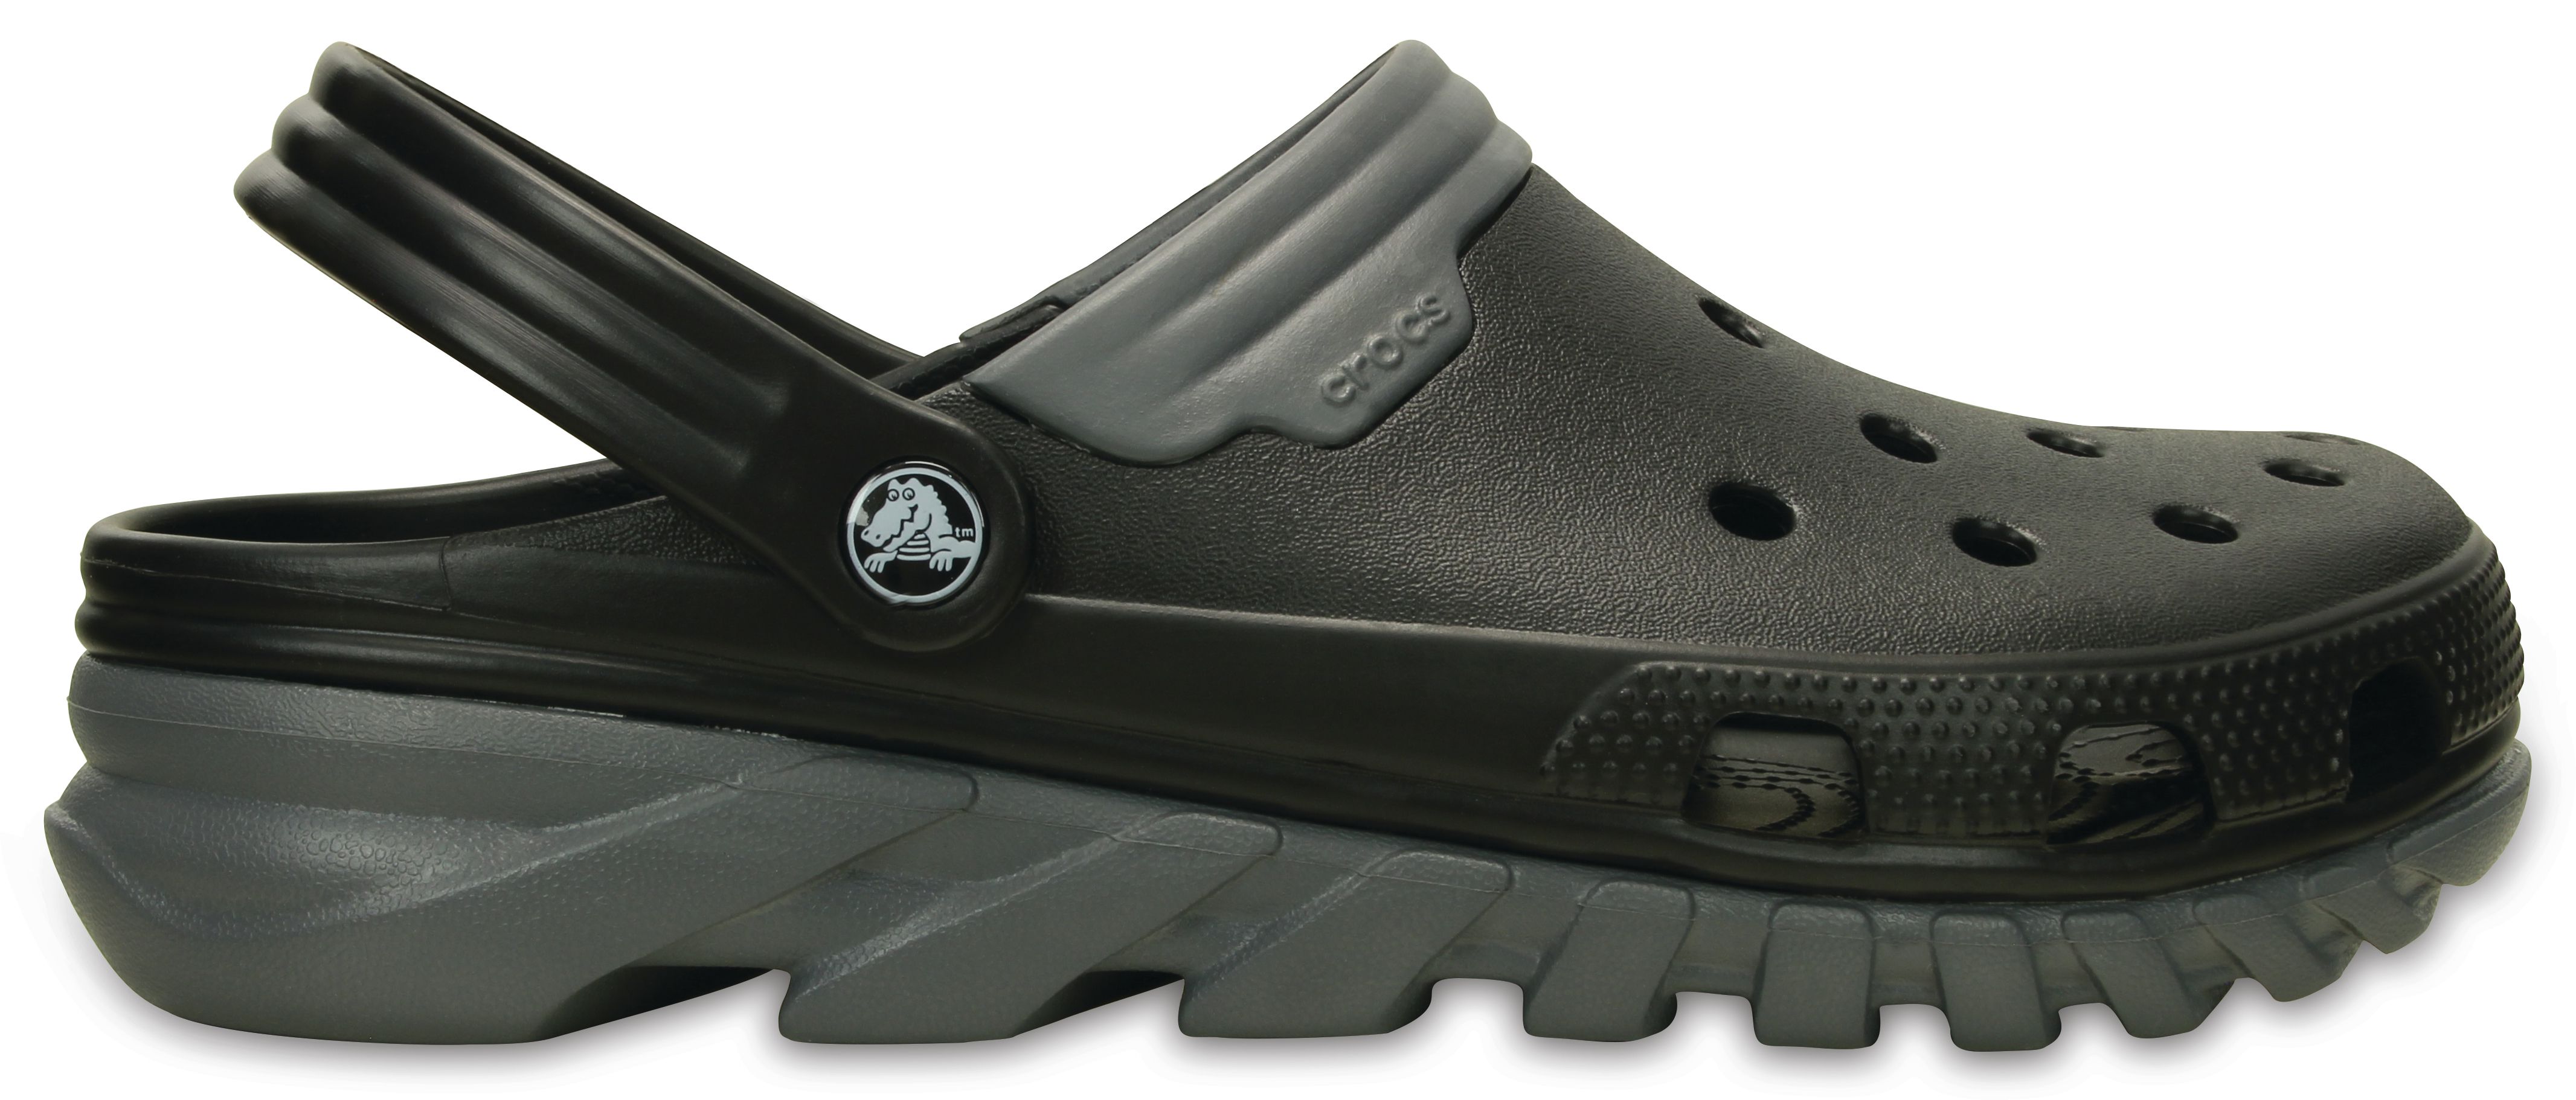 Crocs Men Duet Max Black Sandals - Buy Crocs Men Duet Max Black Sandals Online at Best Prices in